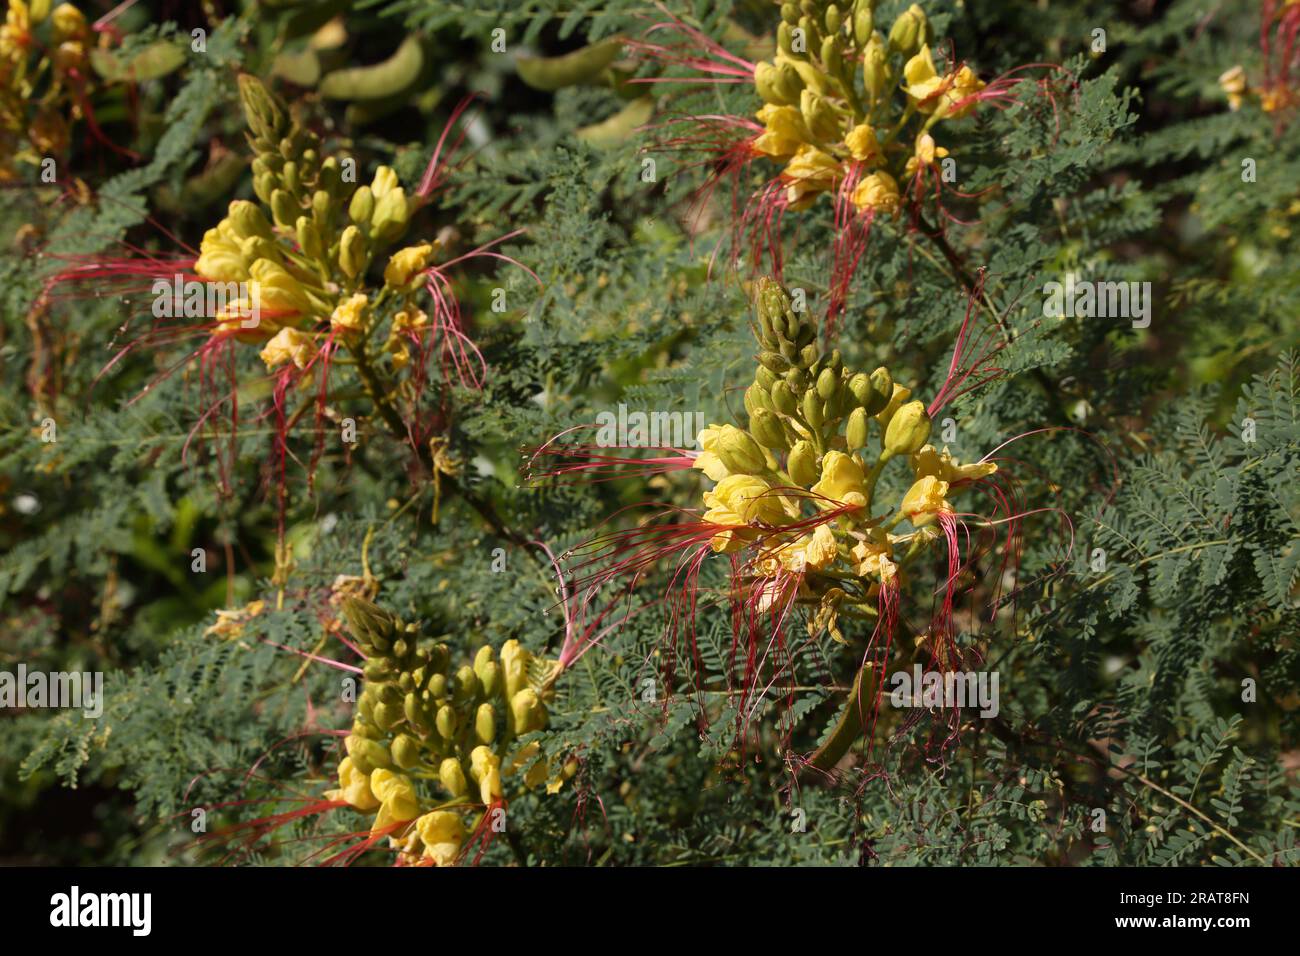 Vouliagmeni Attica Griechenland Gelber Vogel des Paradieses (Caesalpinia Gilliesi) Sträucher mit gelben Blumen und langen roten Stadien Stockfoto